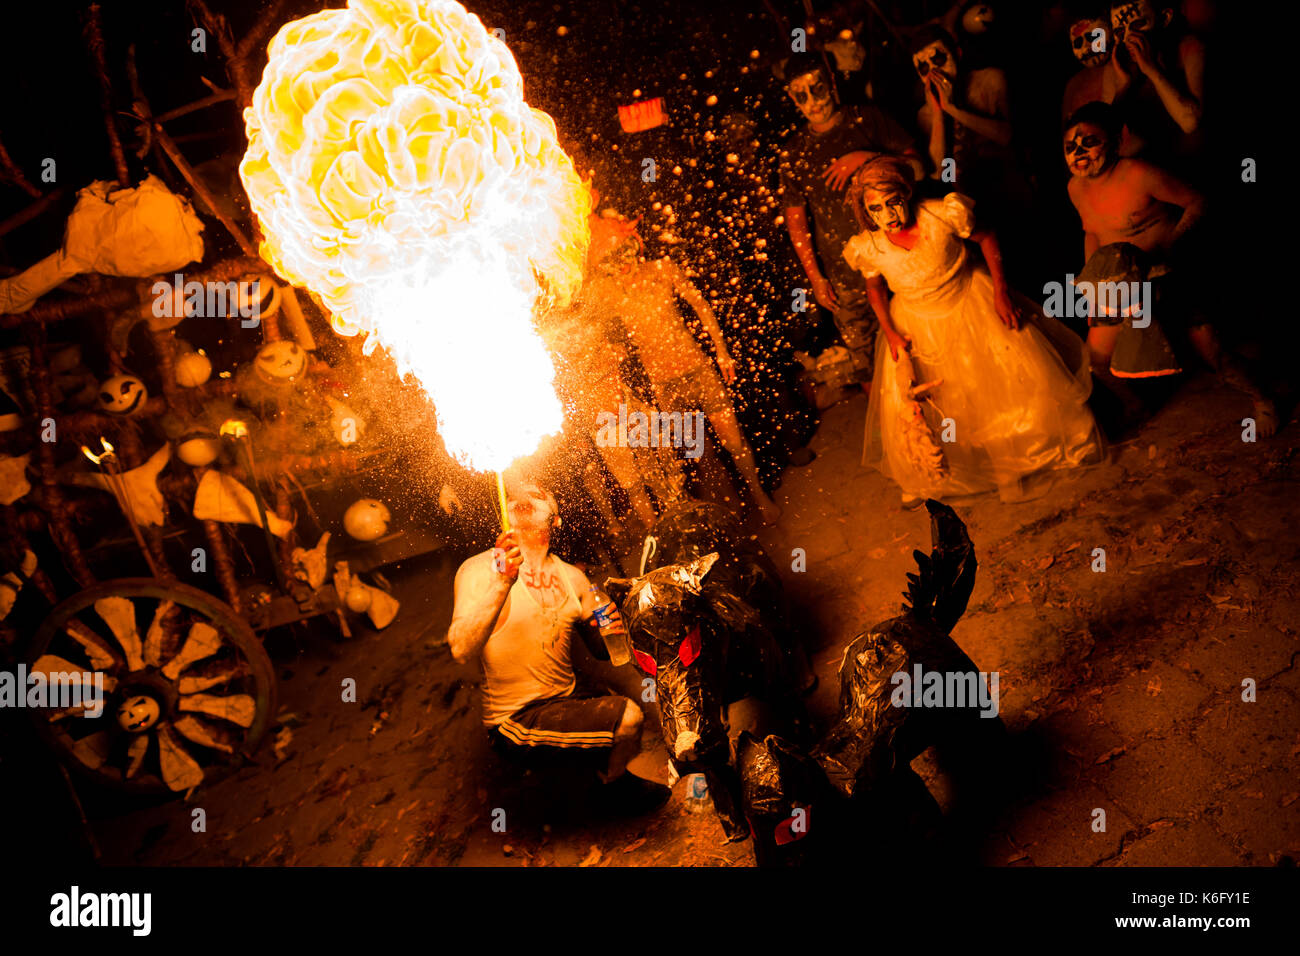 Eine junge Salvadorianische Mann spuckt Feuer, wie er während des La Calabiuza Parade am Tag der Toten fest in Tonacatepeque, El Salvador, 1 Nove Stockfoto